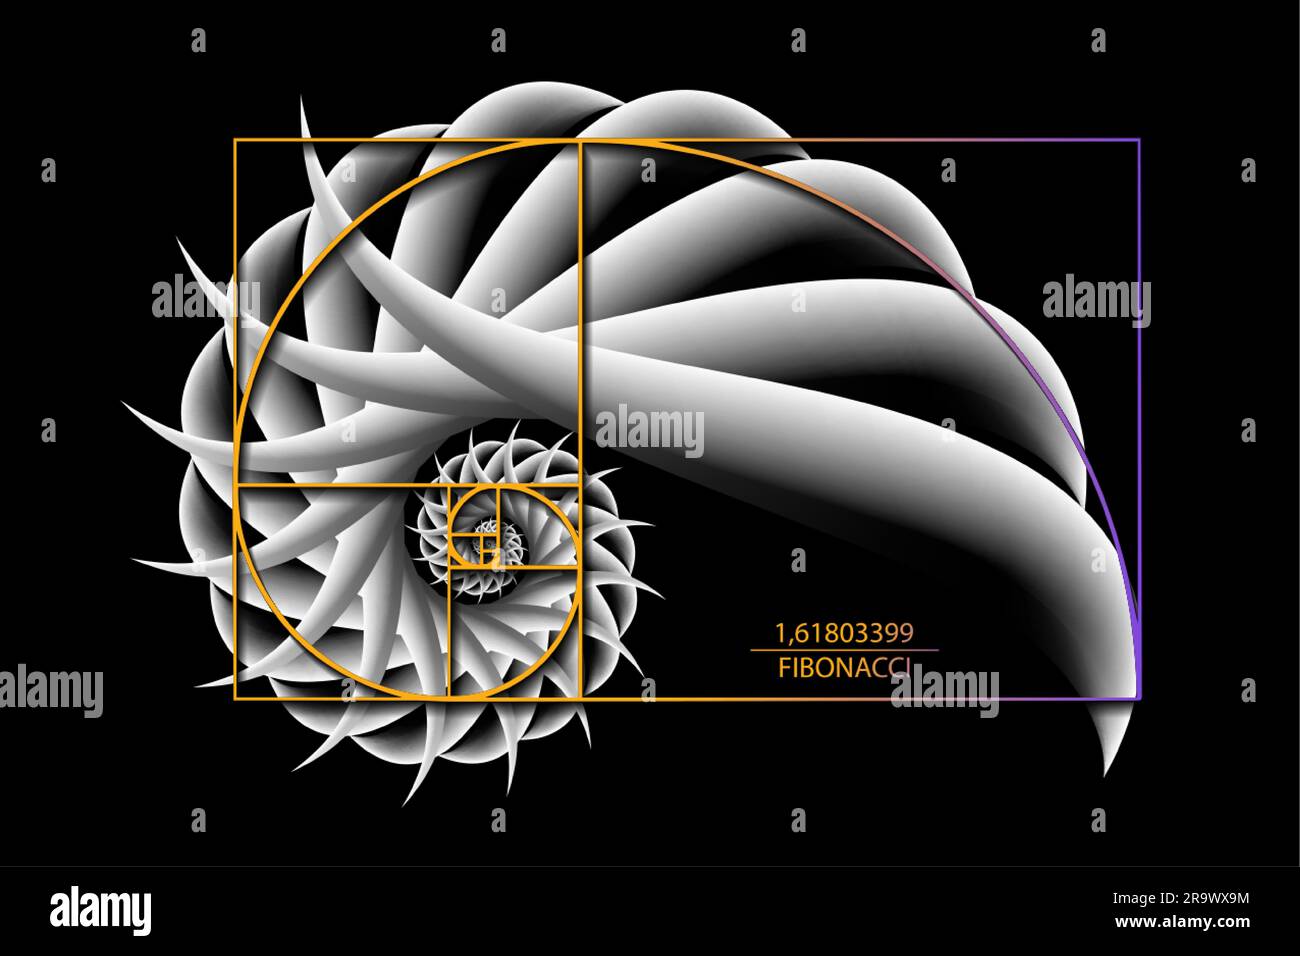 Fibonacci Sequence Golden ratio. Forme geometriche a spirale. Spirale lumaca 3D. Conchiglia marina di cerchi bianchi. Modello logo a geometria sacra. Vettore isolato Illustrazione Vettoriale